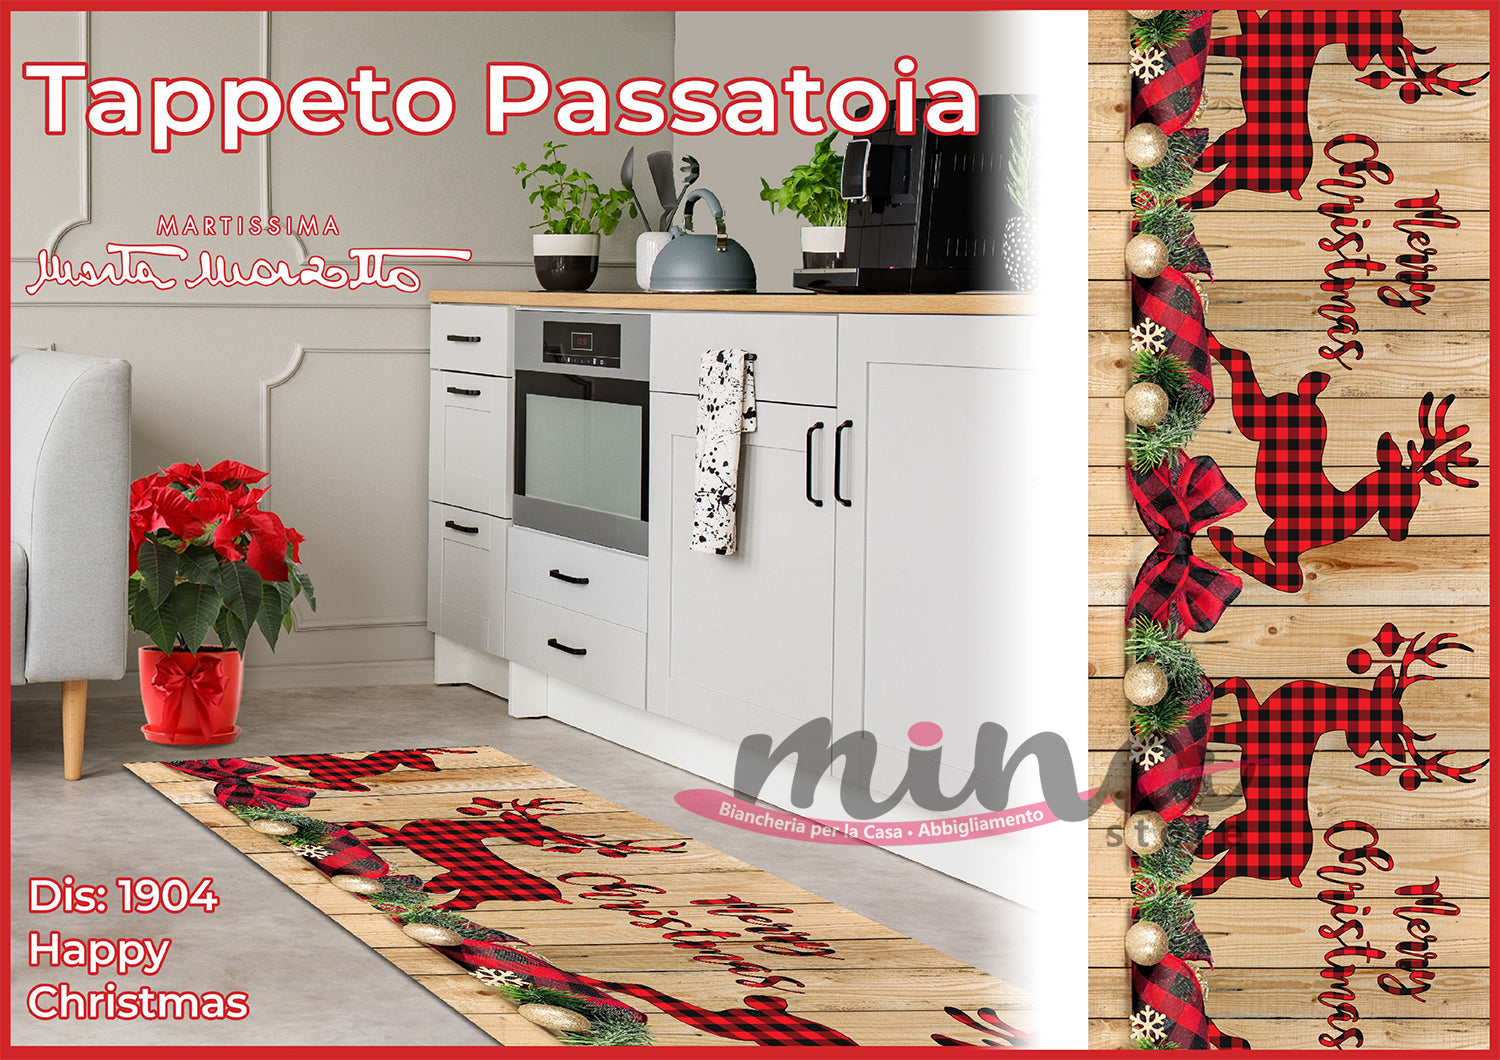 Tappeto Passatoia Cucina Happy Christmas NATALIZIO - Marta Marzotto 100% Made in Italy Natale - 1904